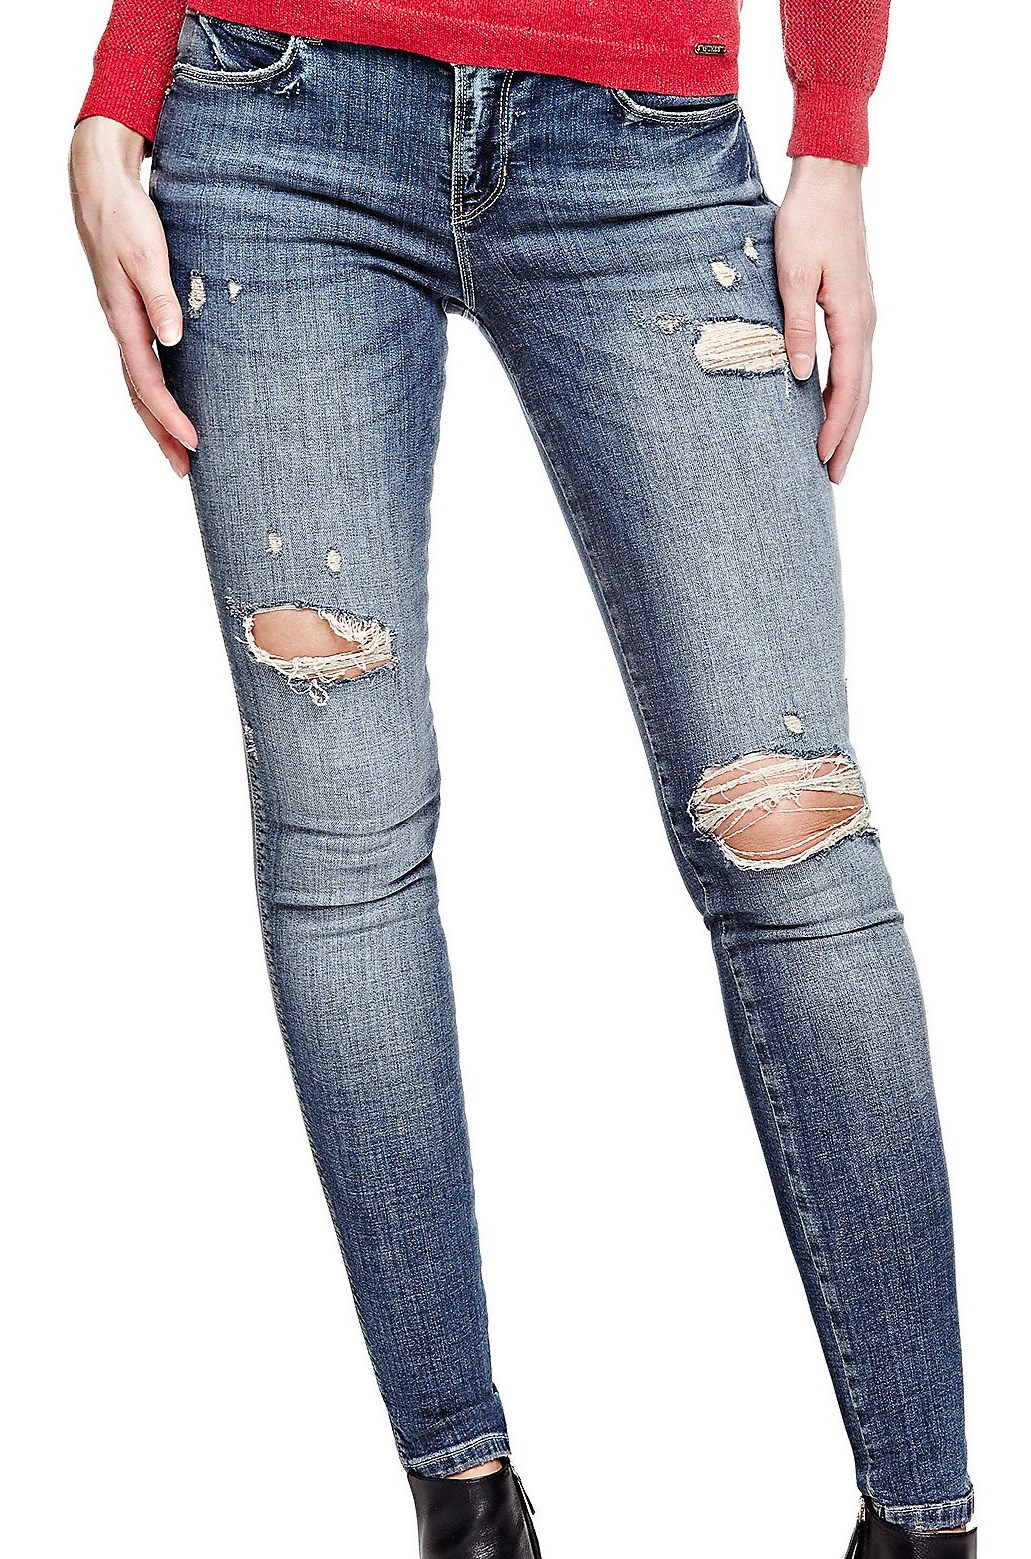 Aktualisieren mehr als 86 jeans donna strappati super heiß - jtcvietnam ...